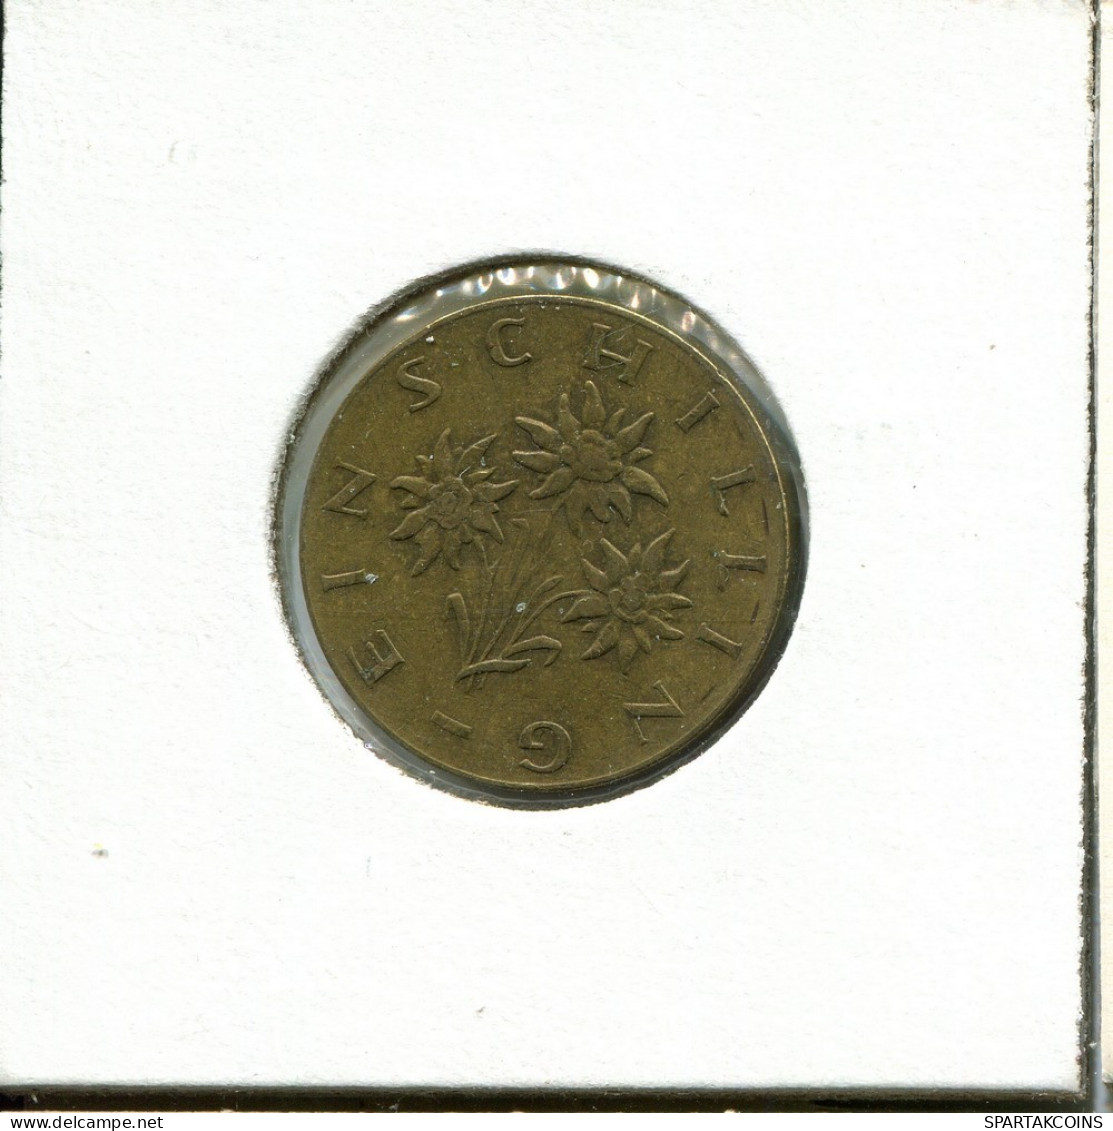 1 SCHILLING 1967 AUSTRIA Moneda #AV075.E.A - Austria